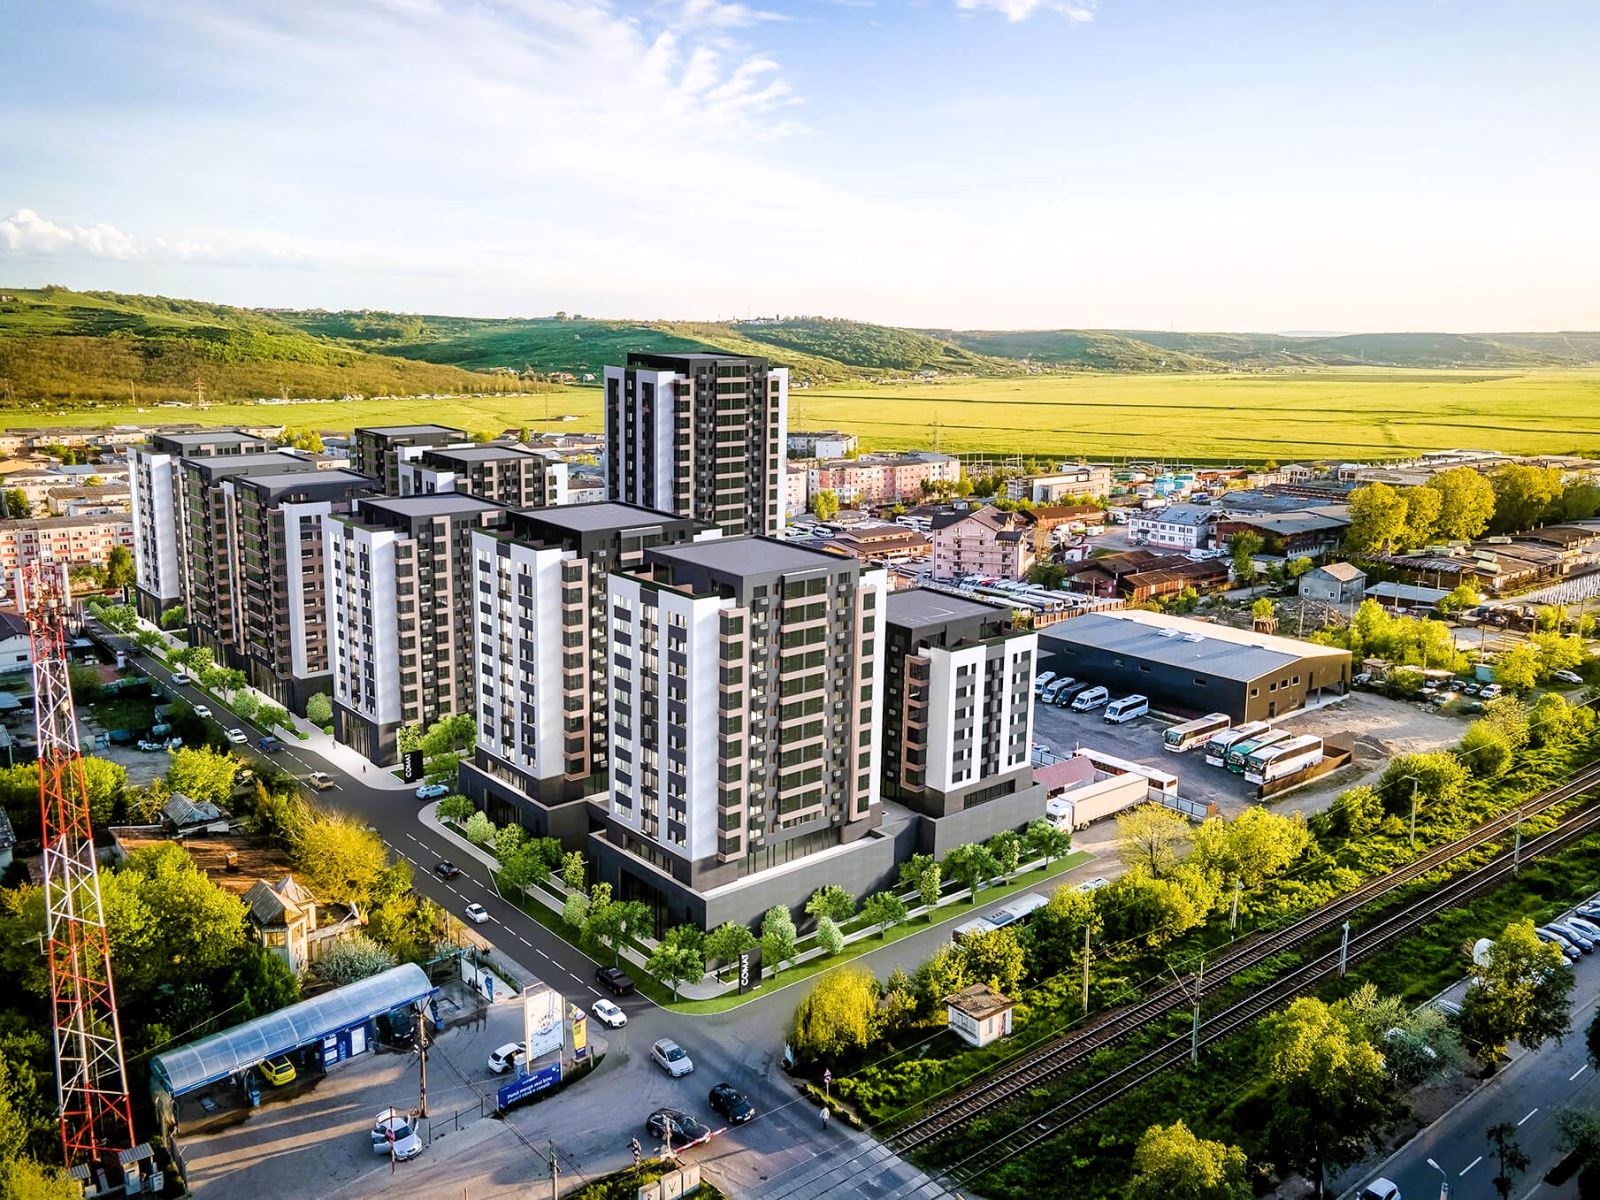 Proiect ambitios in zona Dacia, Comat a primit Autorizatie pentru inca 560 de apartamente in 9 tronsoane noi